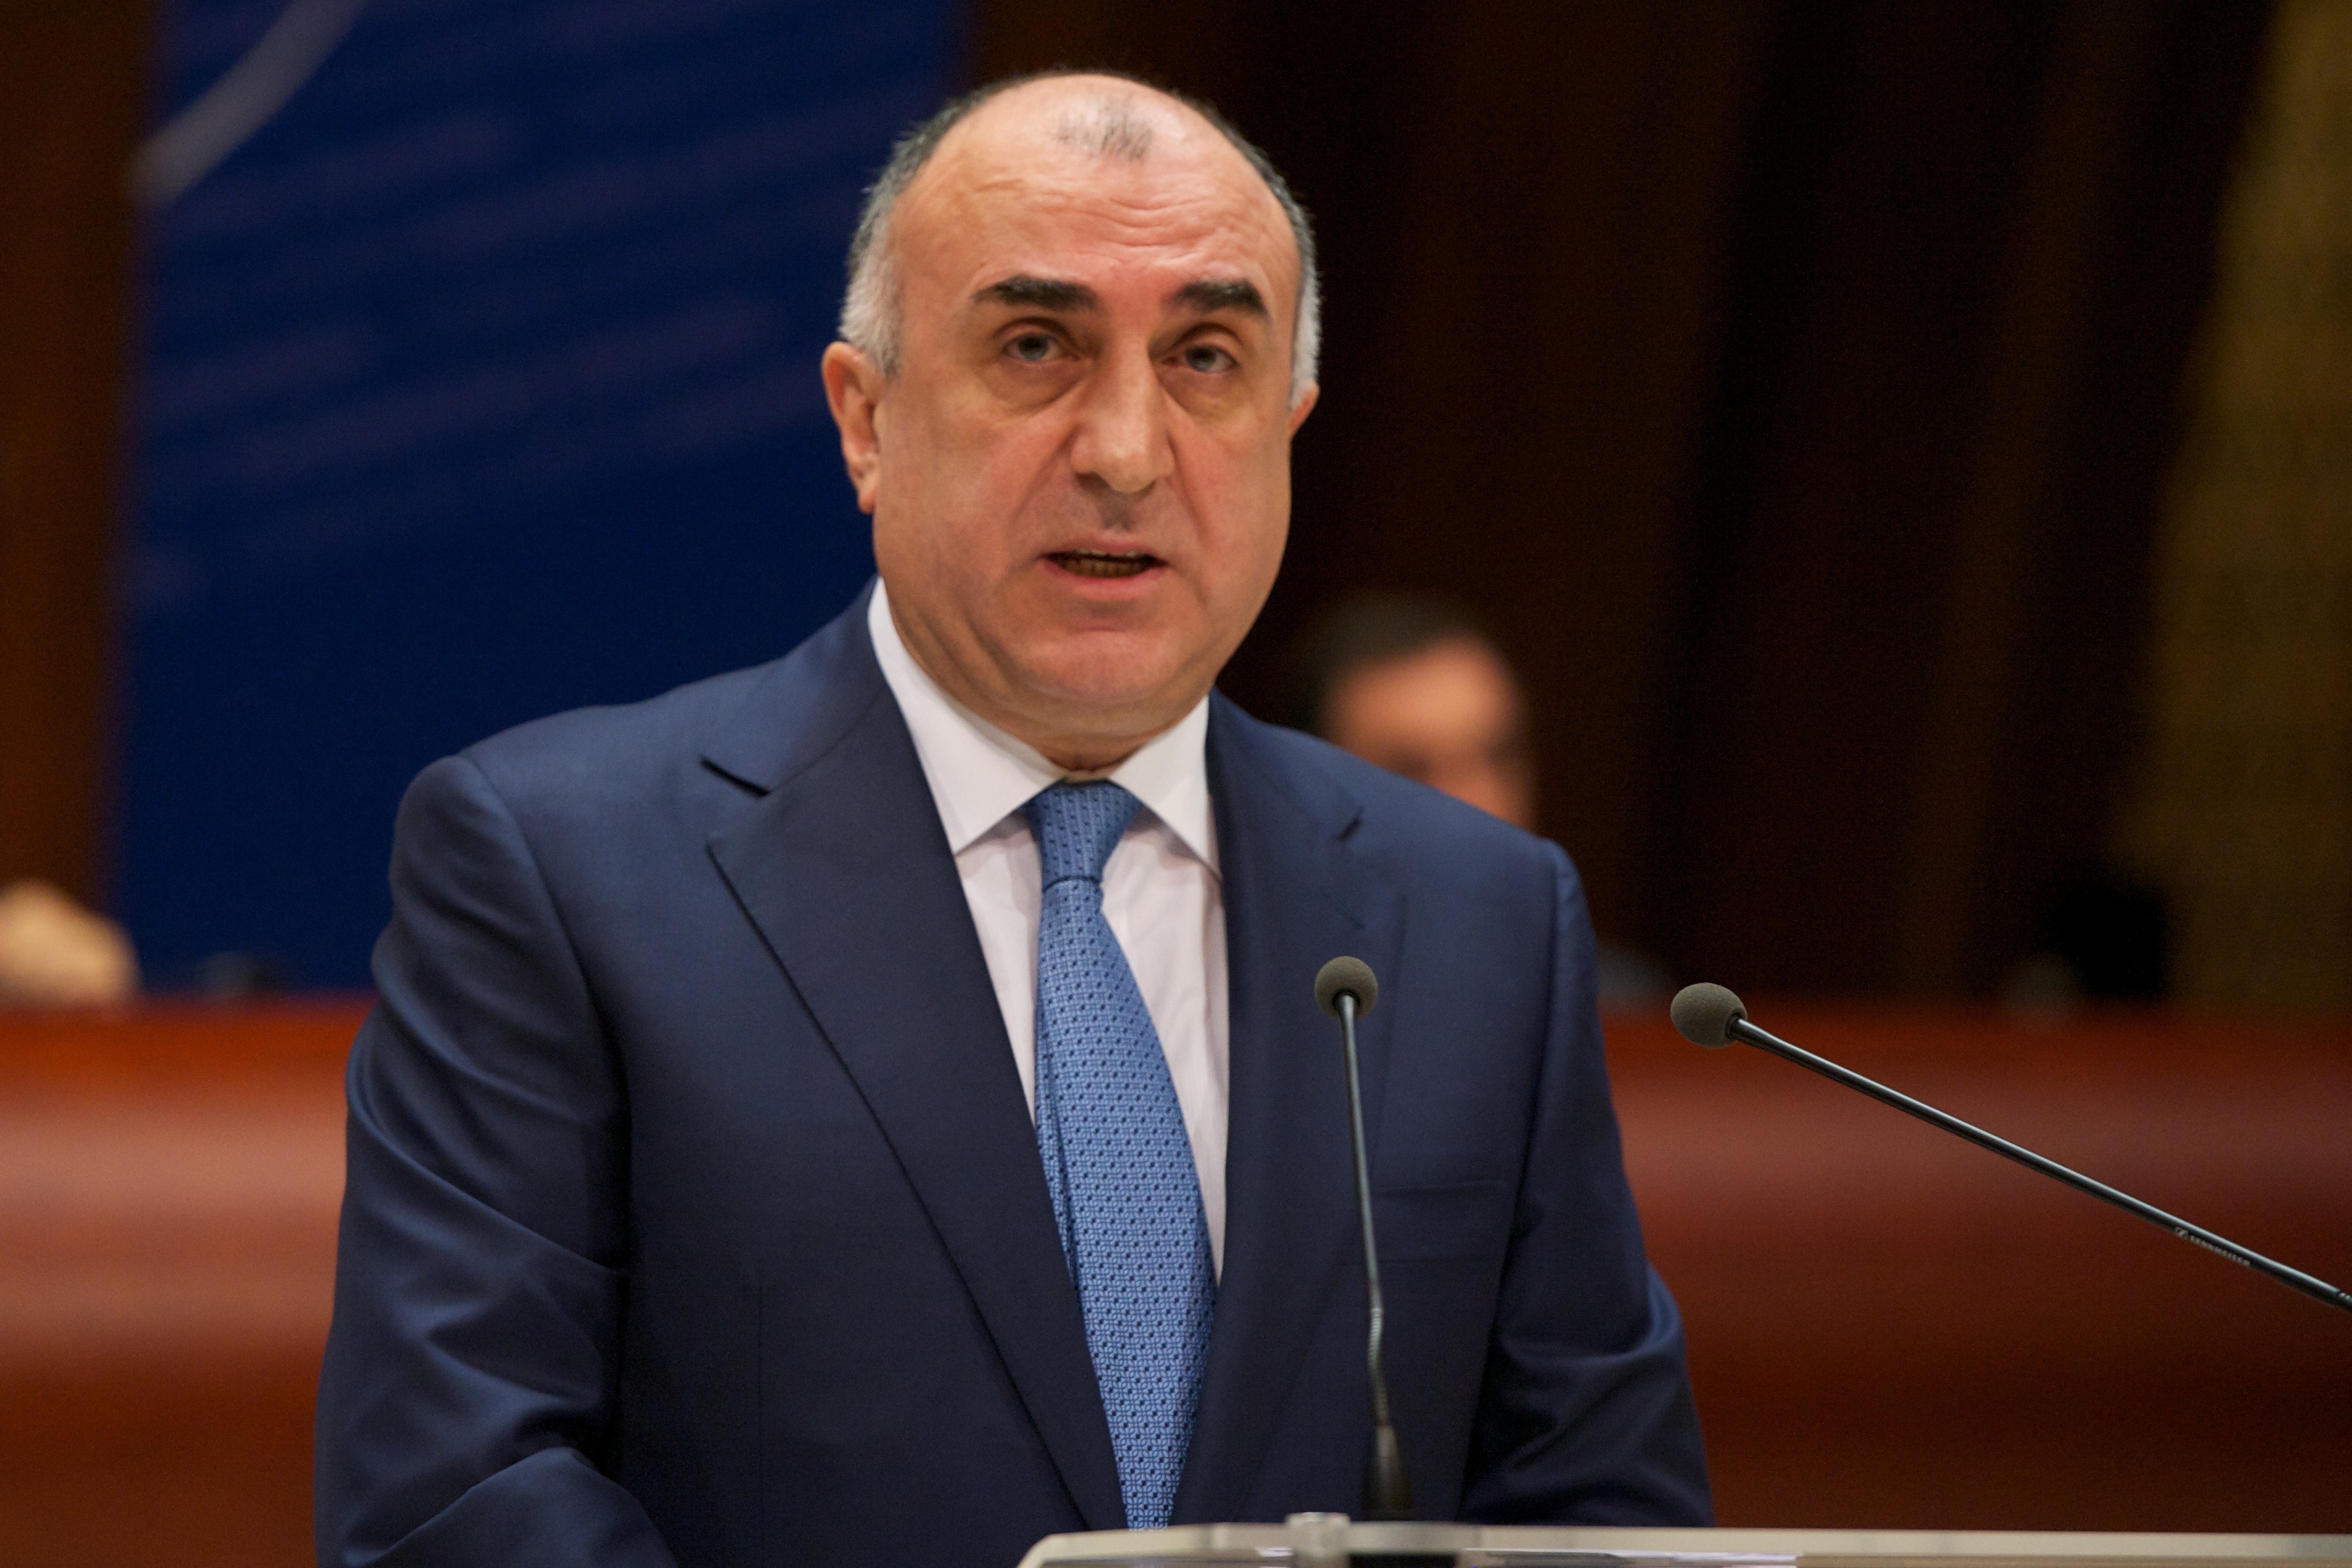 “Ermənistanın demokratik inkişafı azərbaycanlıların öz torpaqlarına qayıtmasına gətirəcək” - Elmar Məmmədyarov